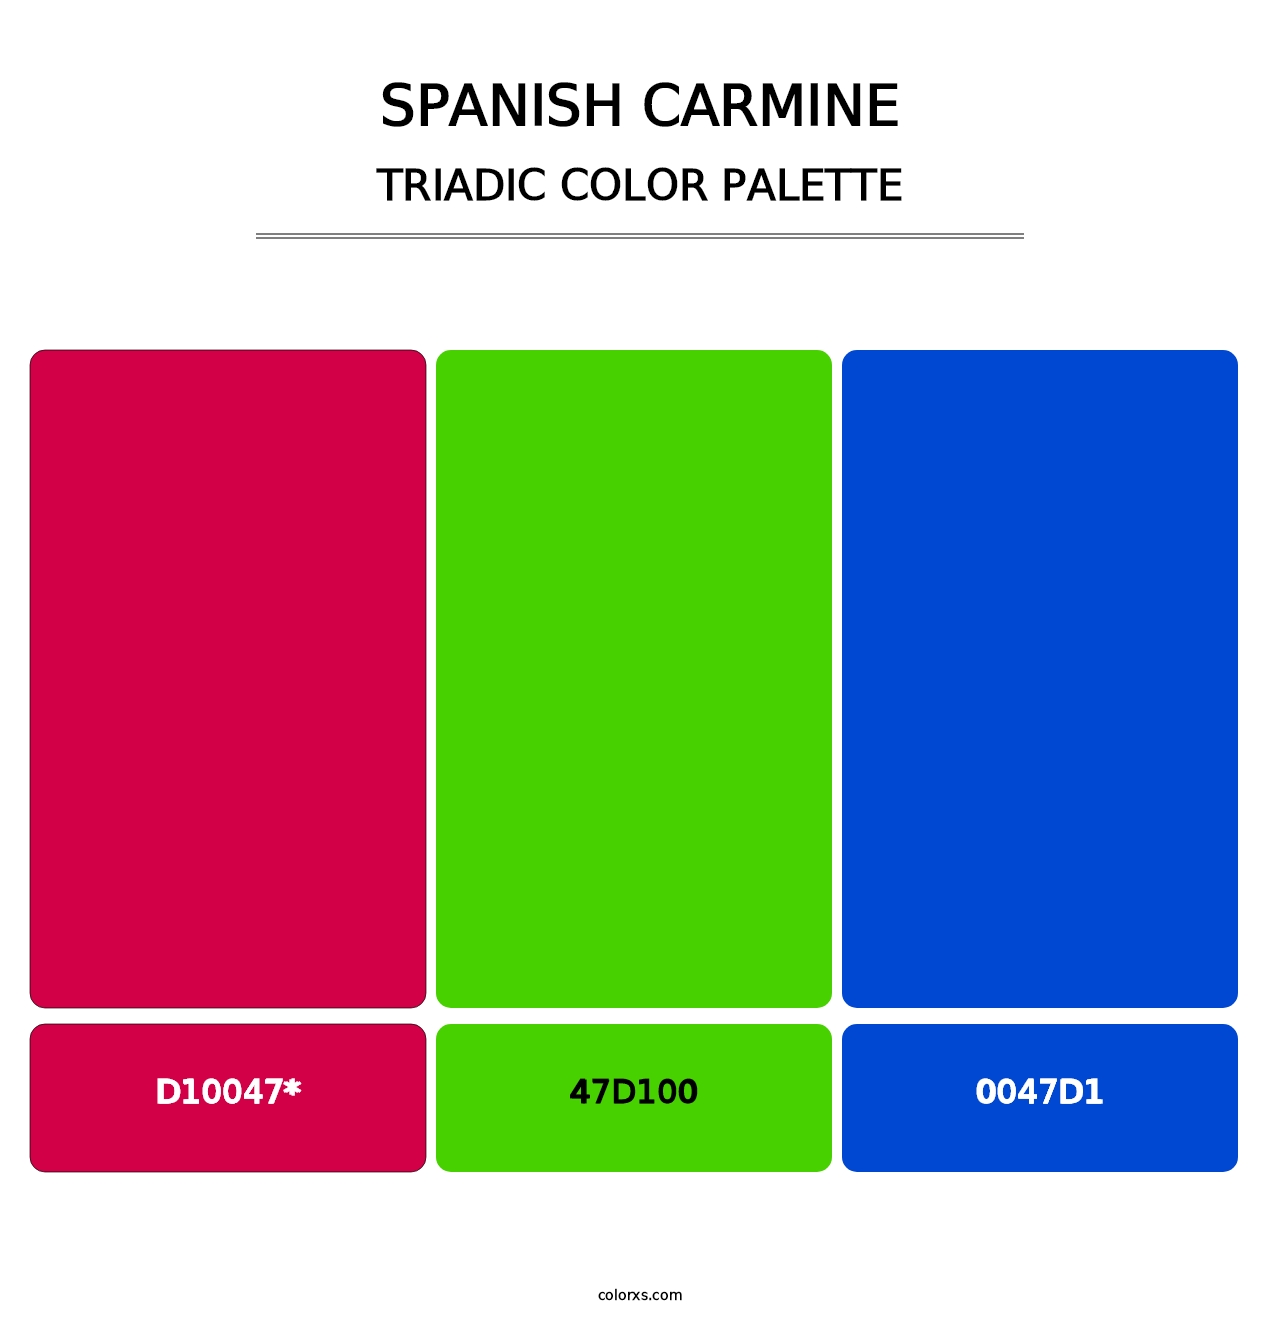 Spanish Carmine - Triadic Color Palette